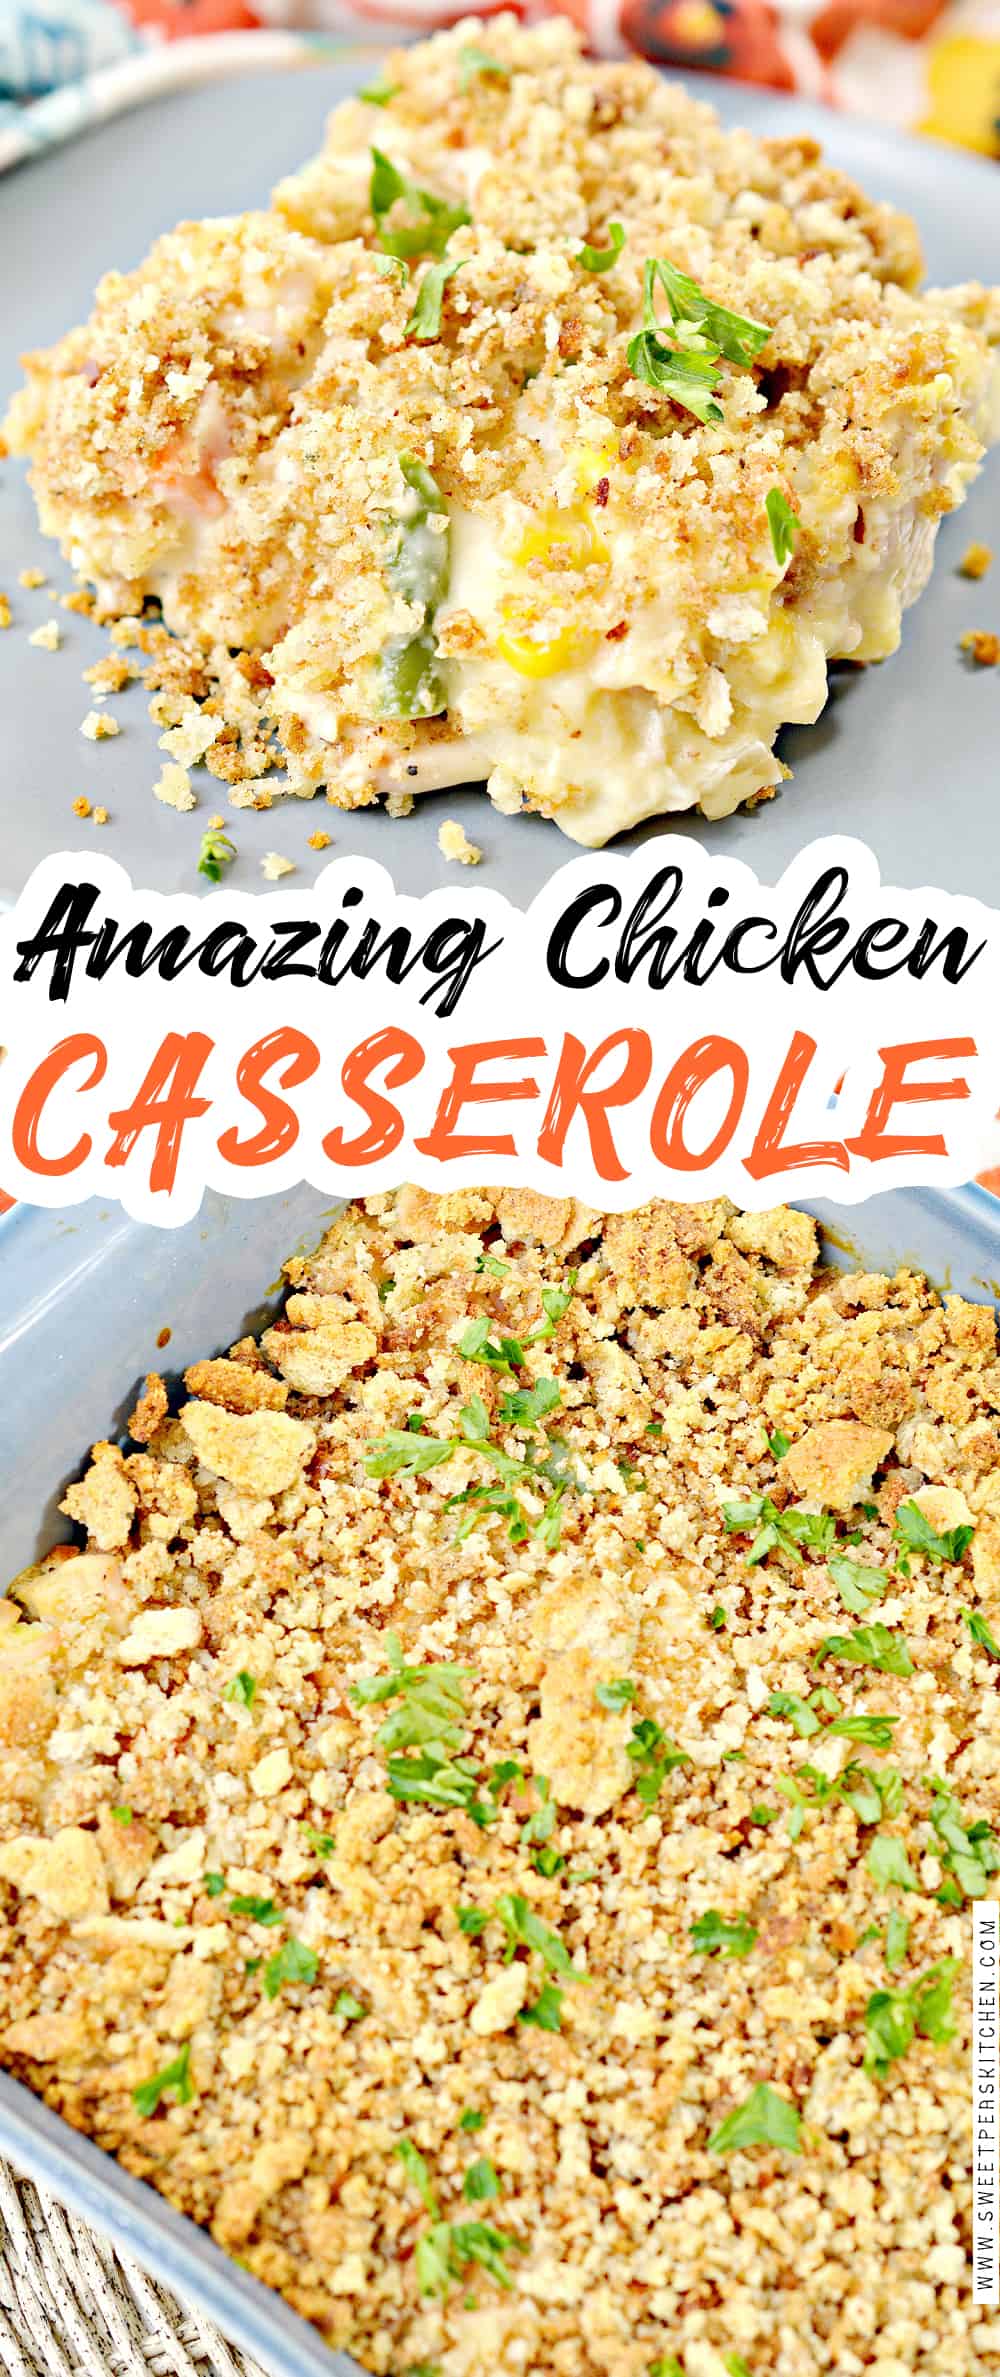 Amazing Chicken Casserole